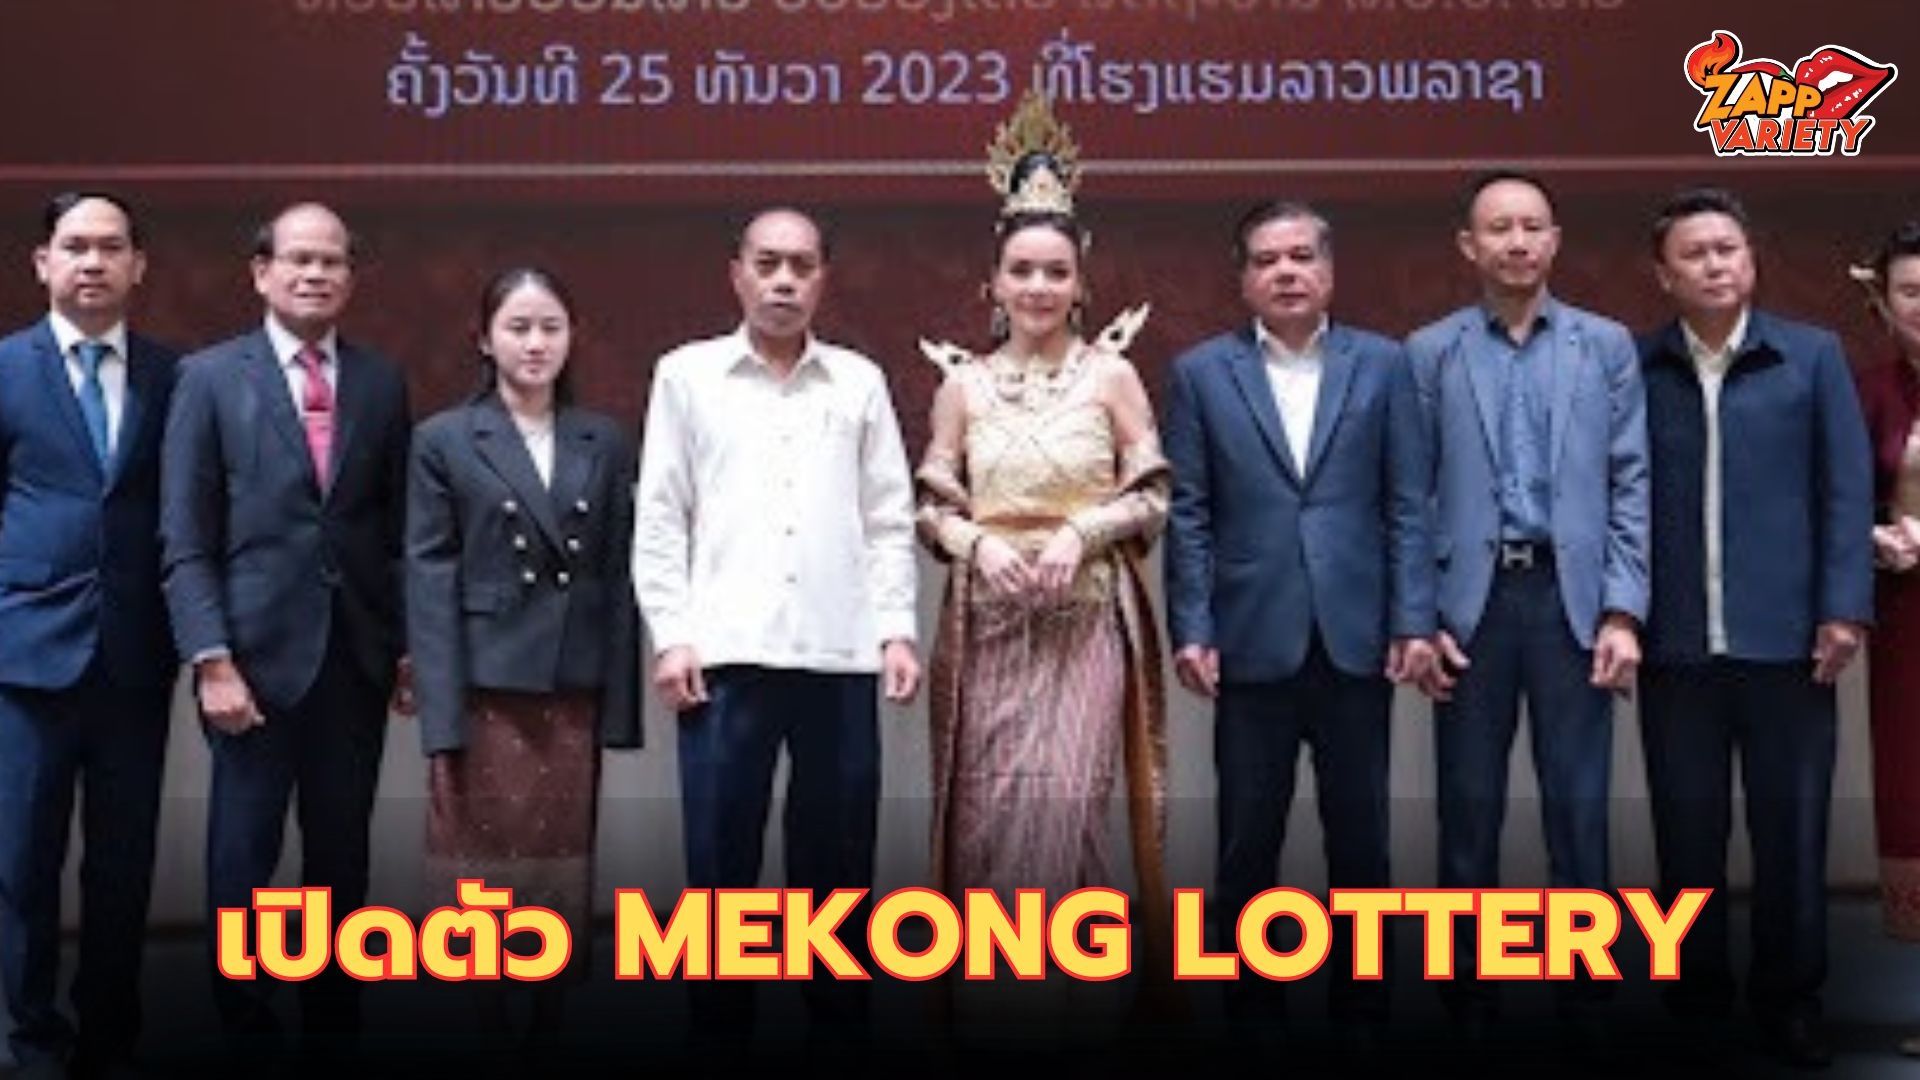 กระตุ้นเศรษฐกิจ รัฐวิสาหกิจหวยลาวพัฒนา ร่วมกับ บริษัทบุปผาคูณทรัพย์ เปิดตัวสลากกินแบ่ง Mekong Lottery Online หวยแม่โขงออนไลน์คาดรายได้ 1,000 ล้าน ในปีหน้า เล็งนำรายได้มาพัฒนาประเทศ